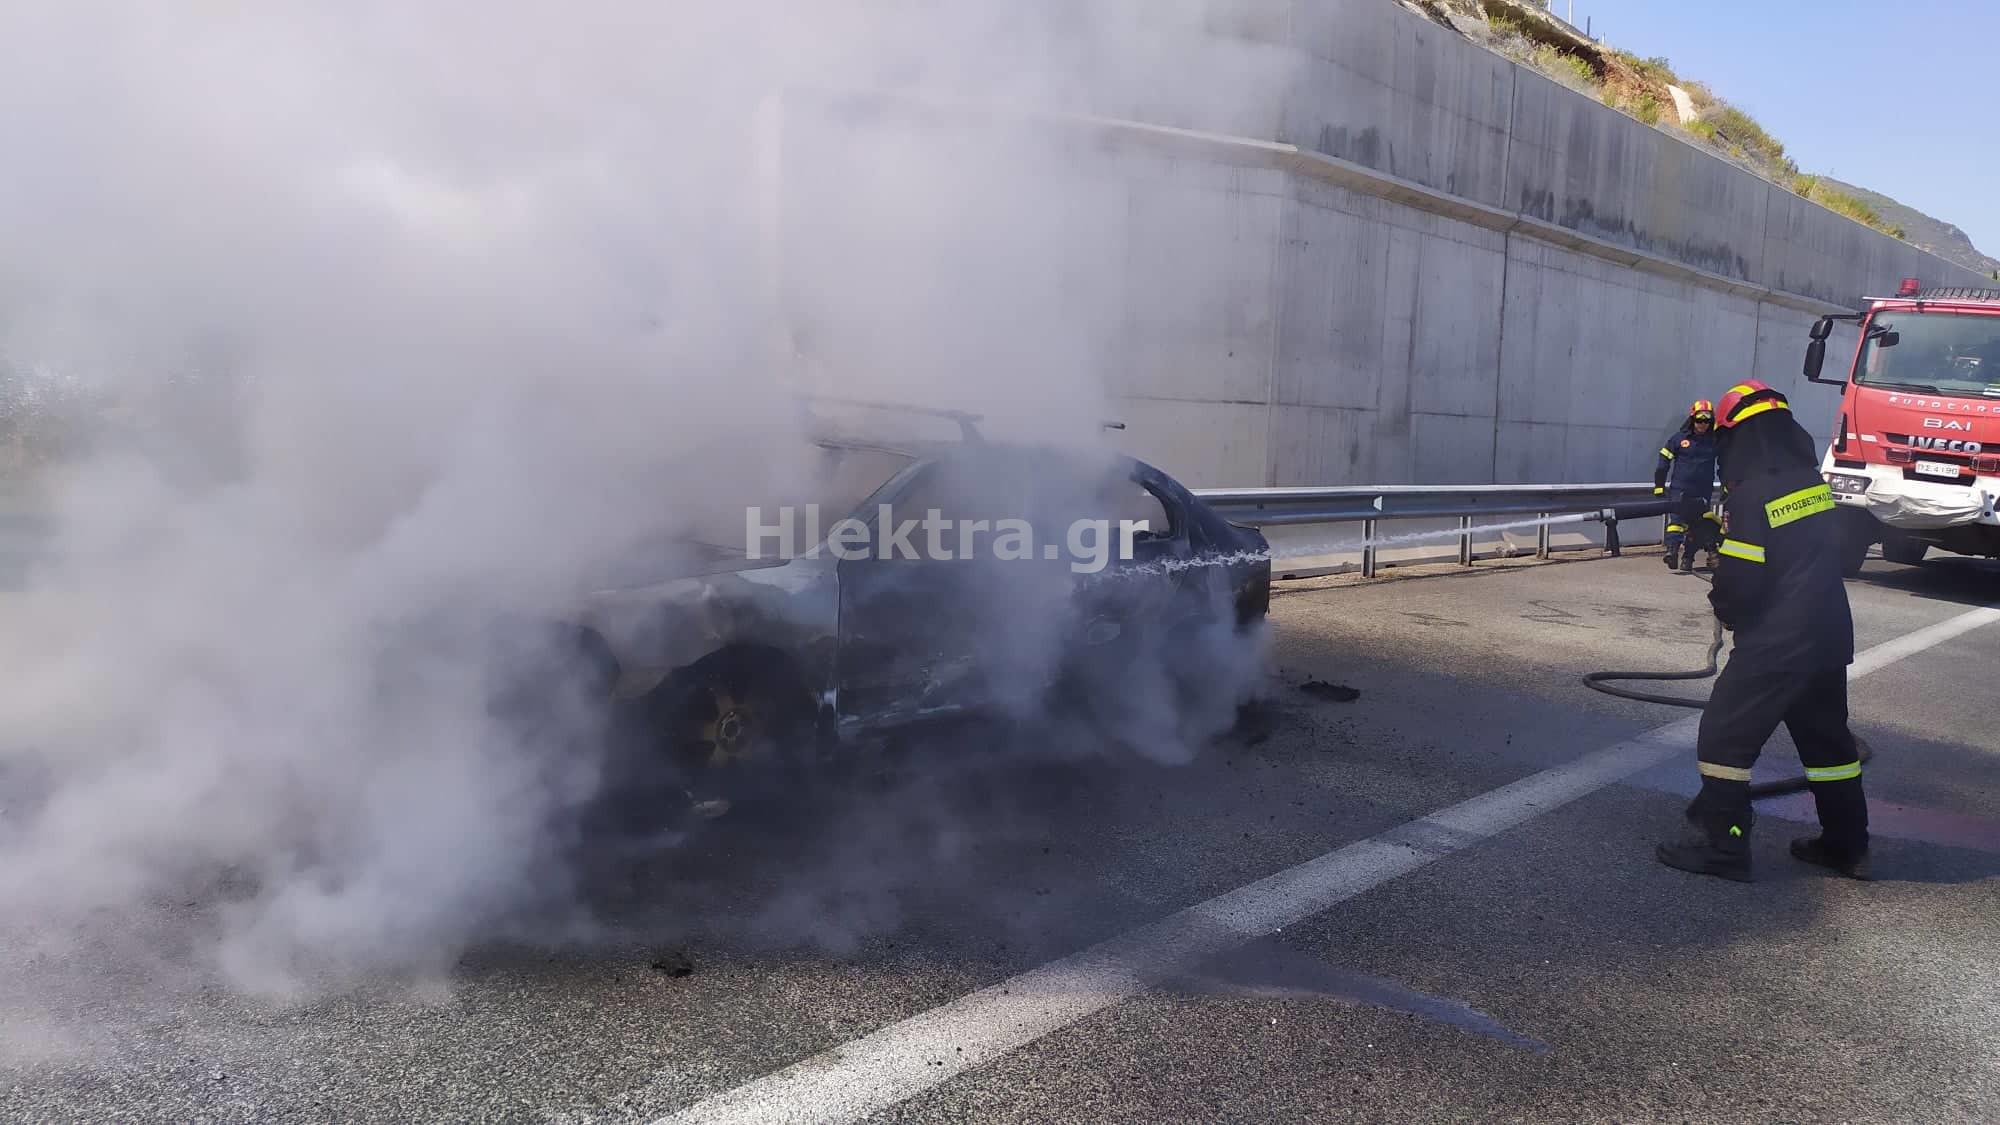 Κορινθία: Λαμπάδιασε αυτοκίνητο εν κινήσει στην εθνική οδό! Ένας τραυματίας από τη φωτιά (Φωτό)